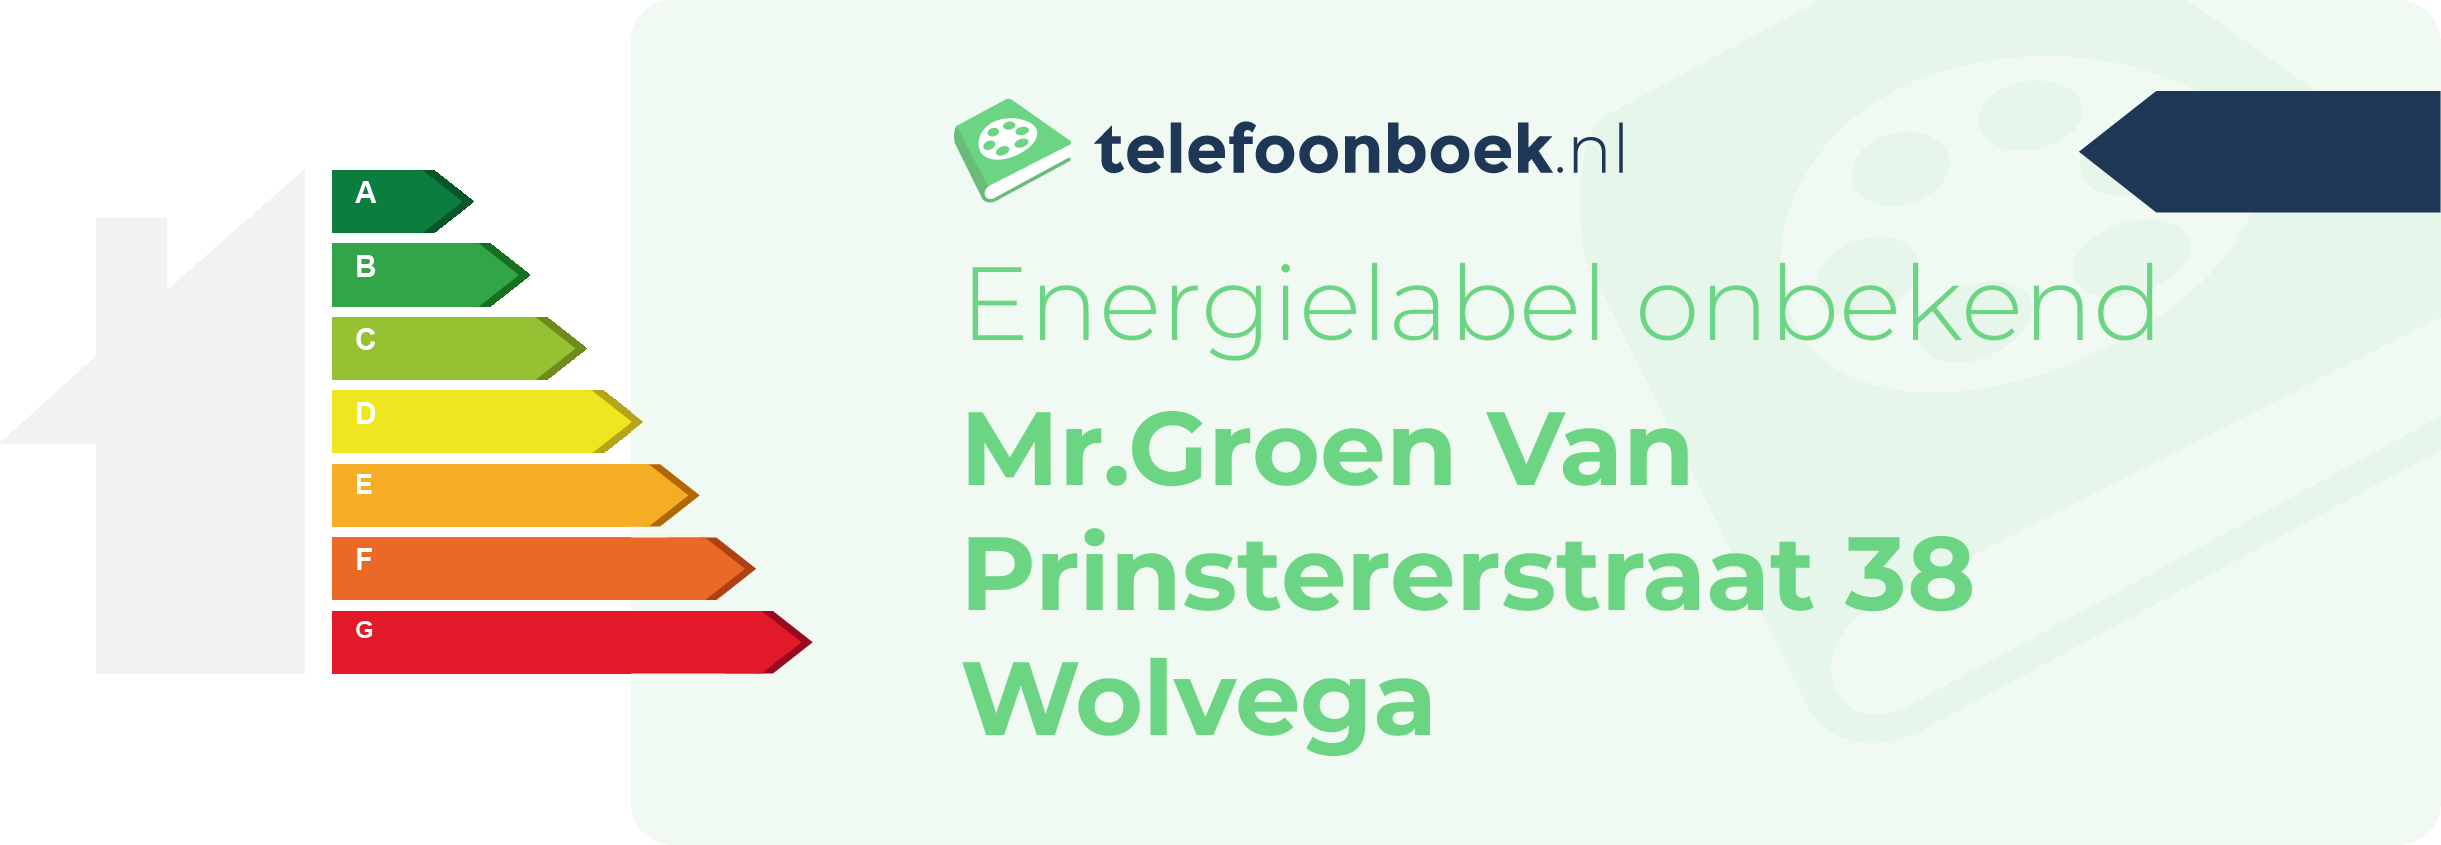 Energielabel Mr.Groen Van Prinstererstraat 38 Wolvega